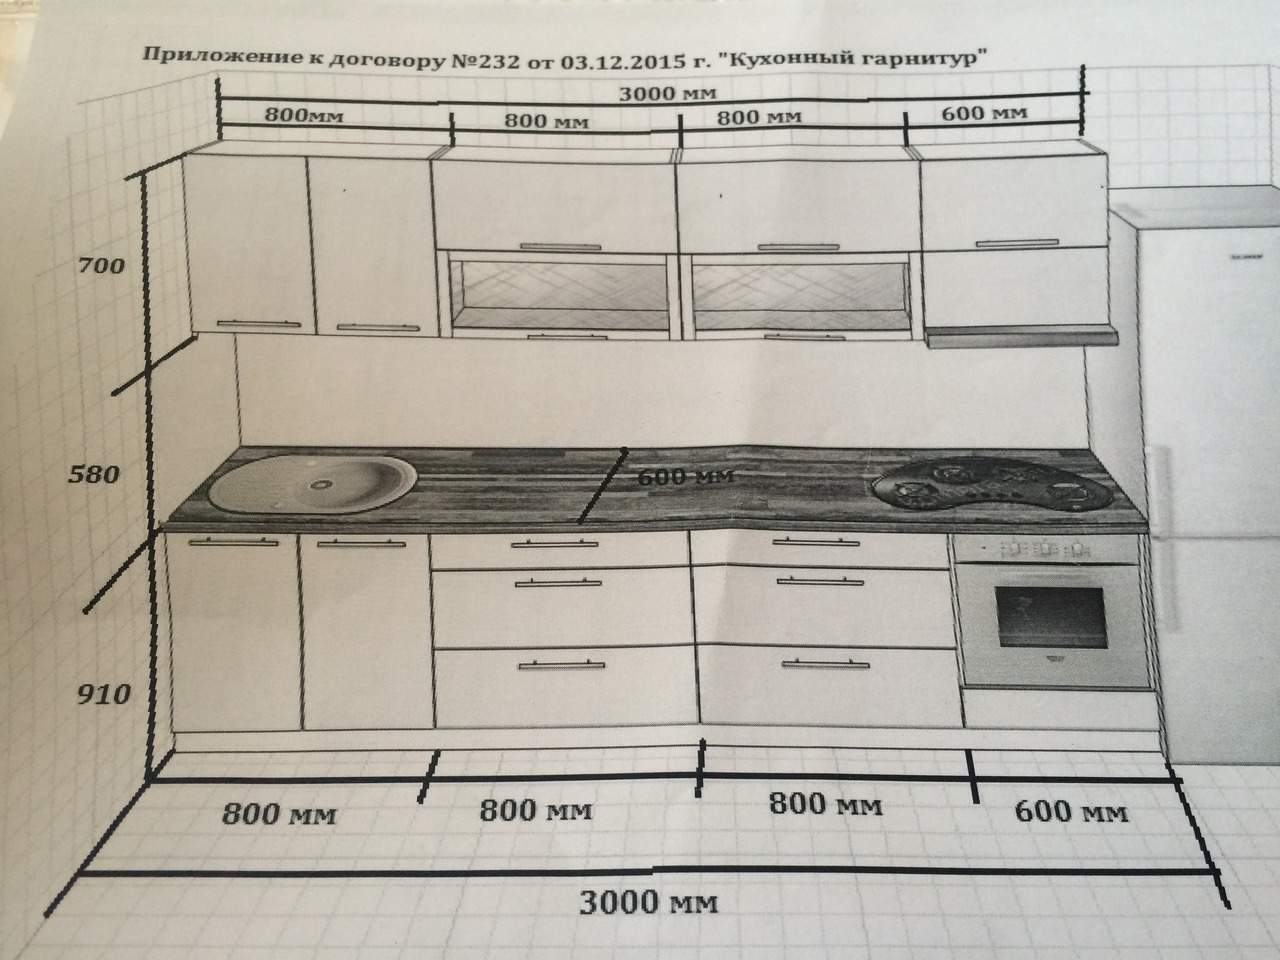 высота кухонного гарнитура от пола со столешницей стандарт